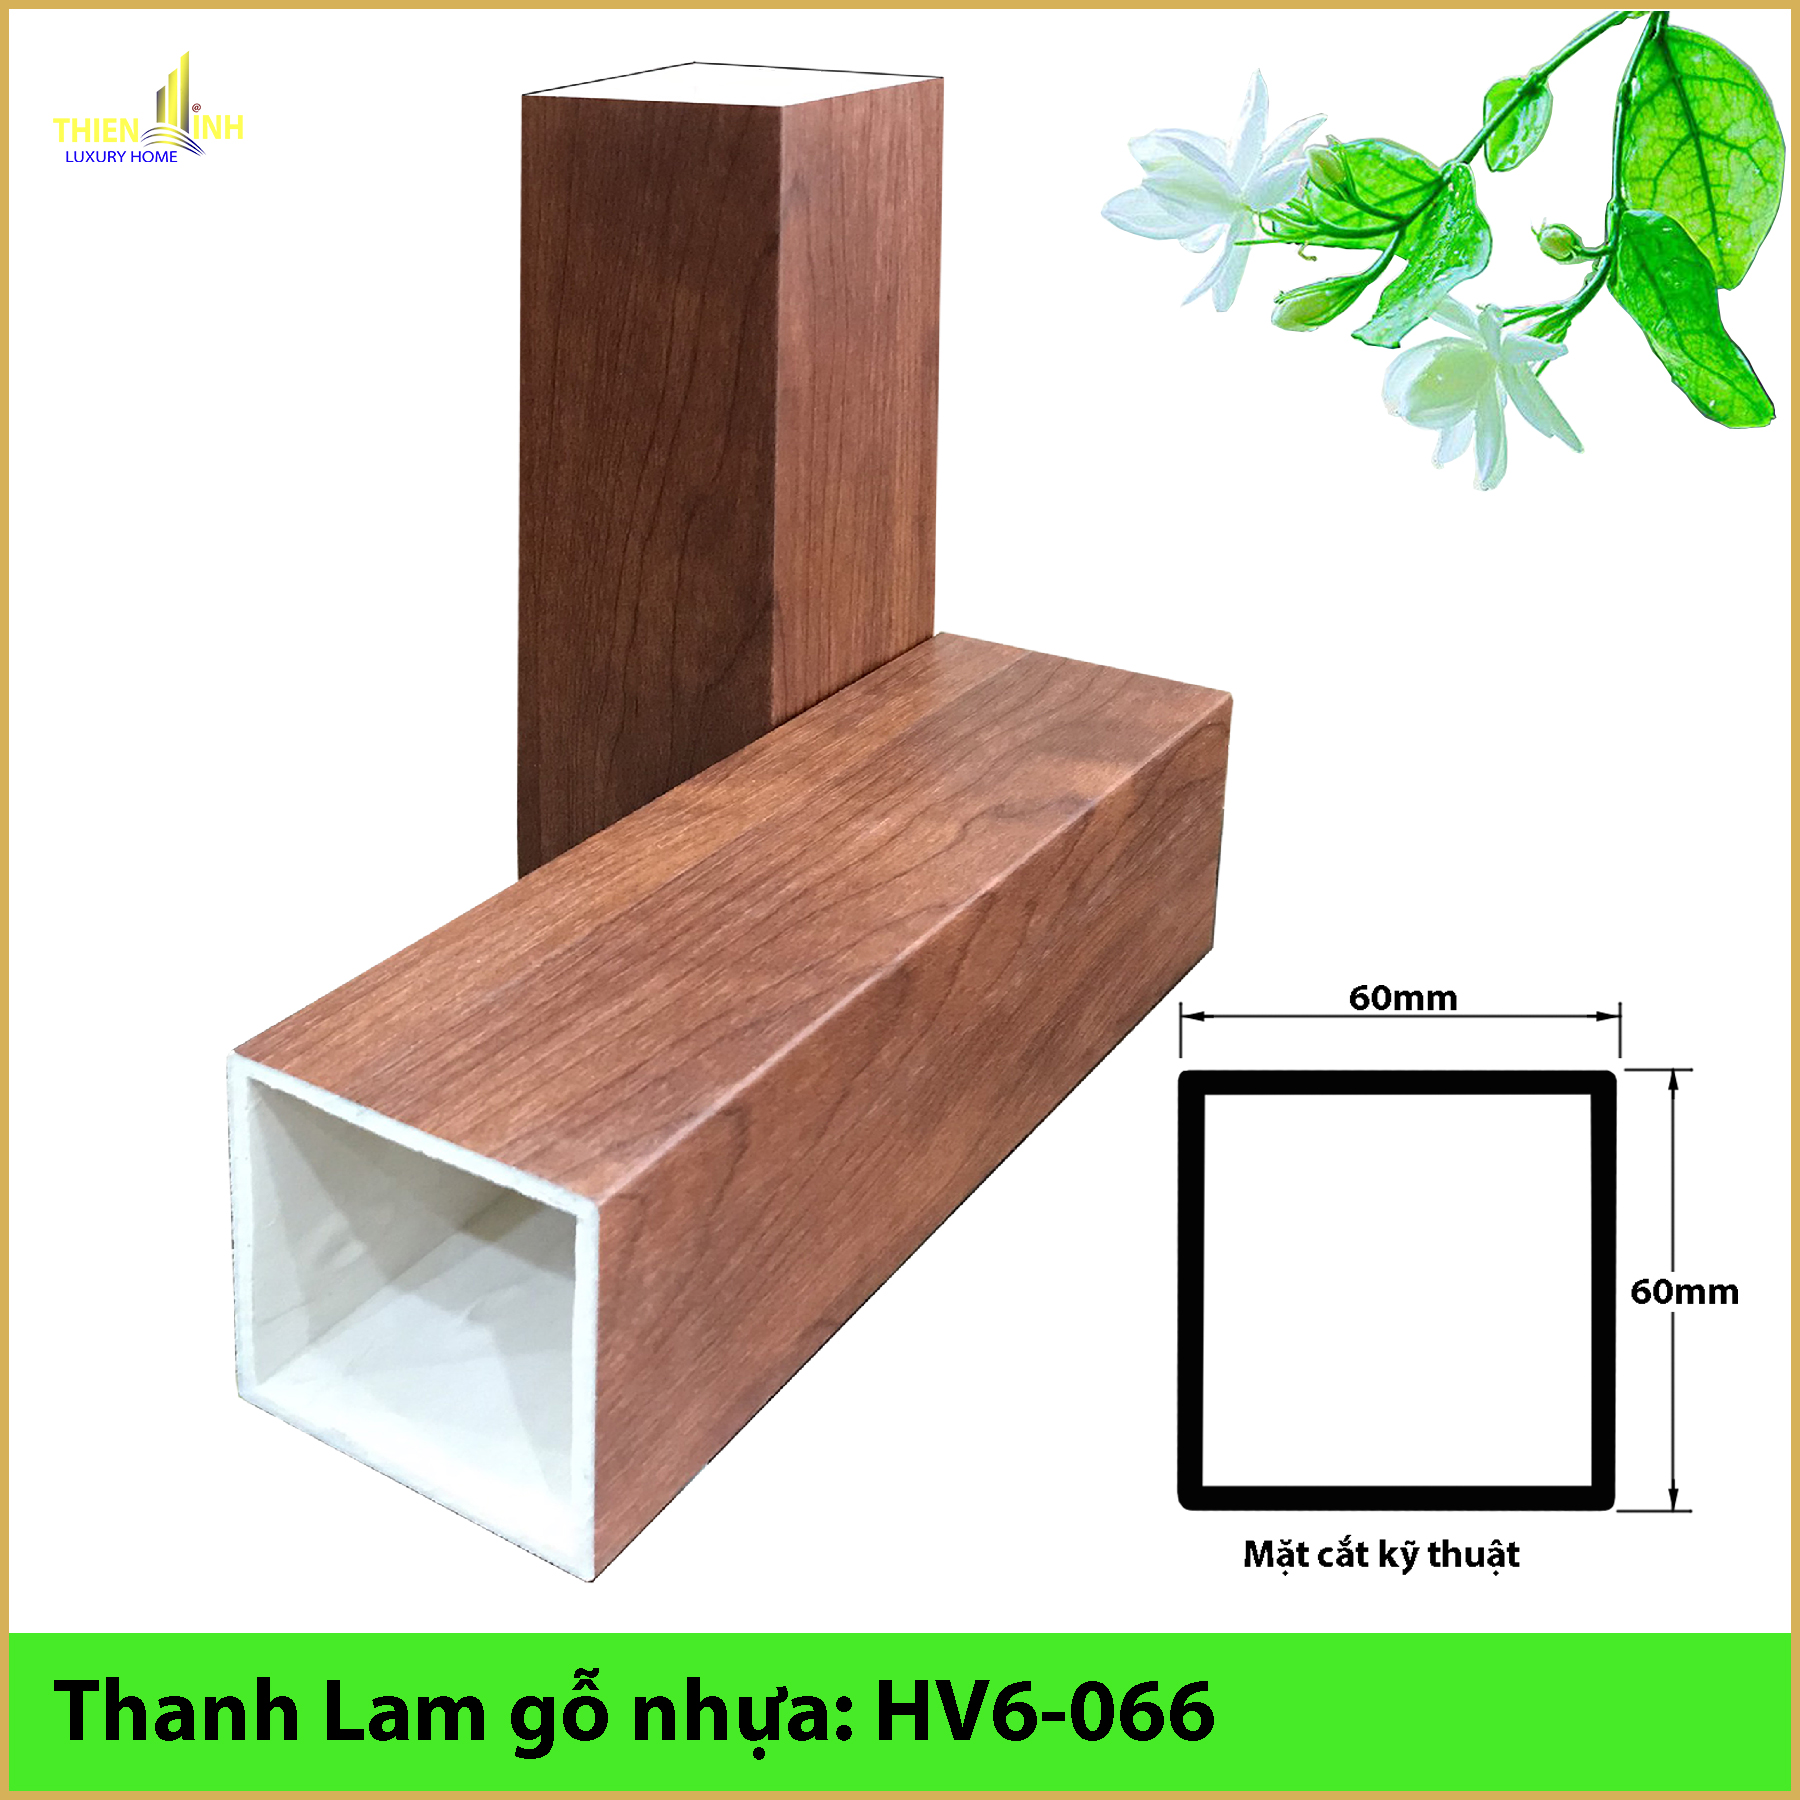 Thanh Lam gỗ nhựa HV6-066